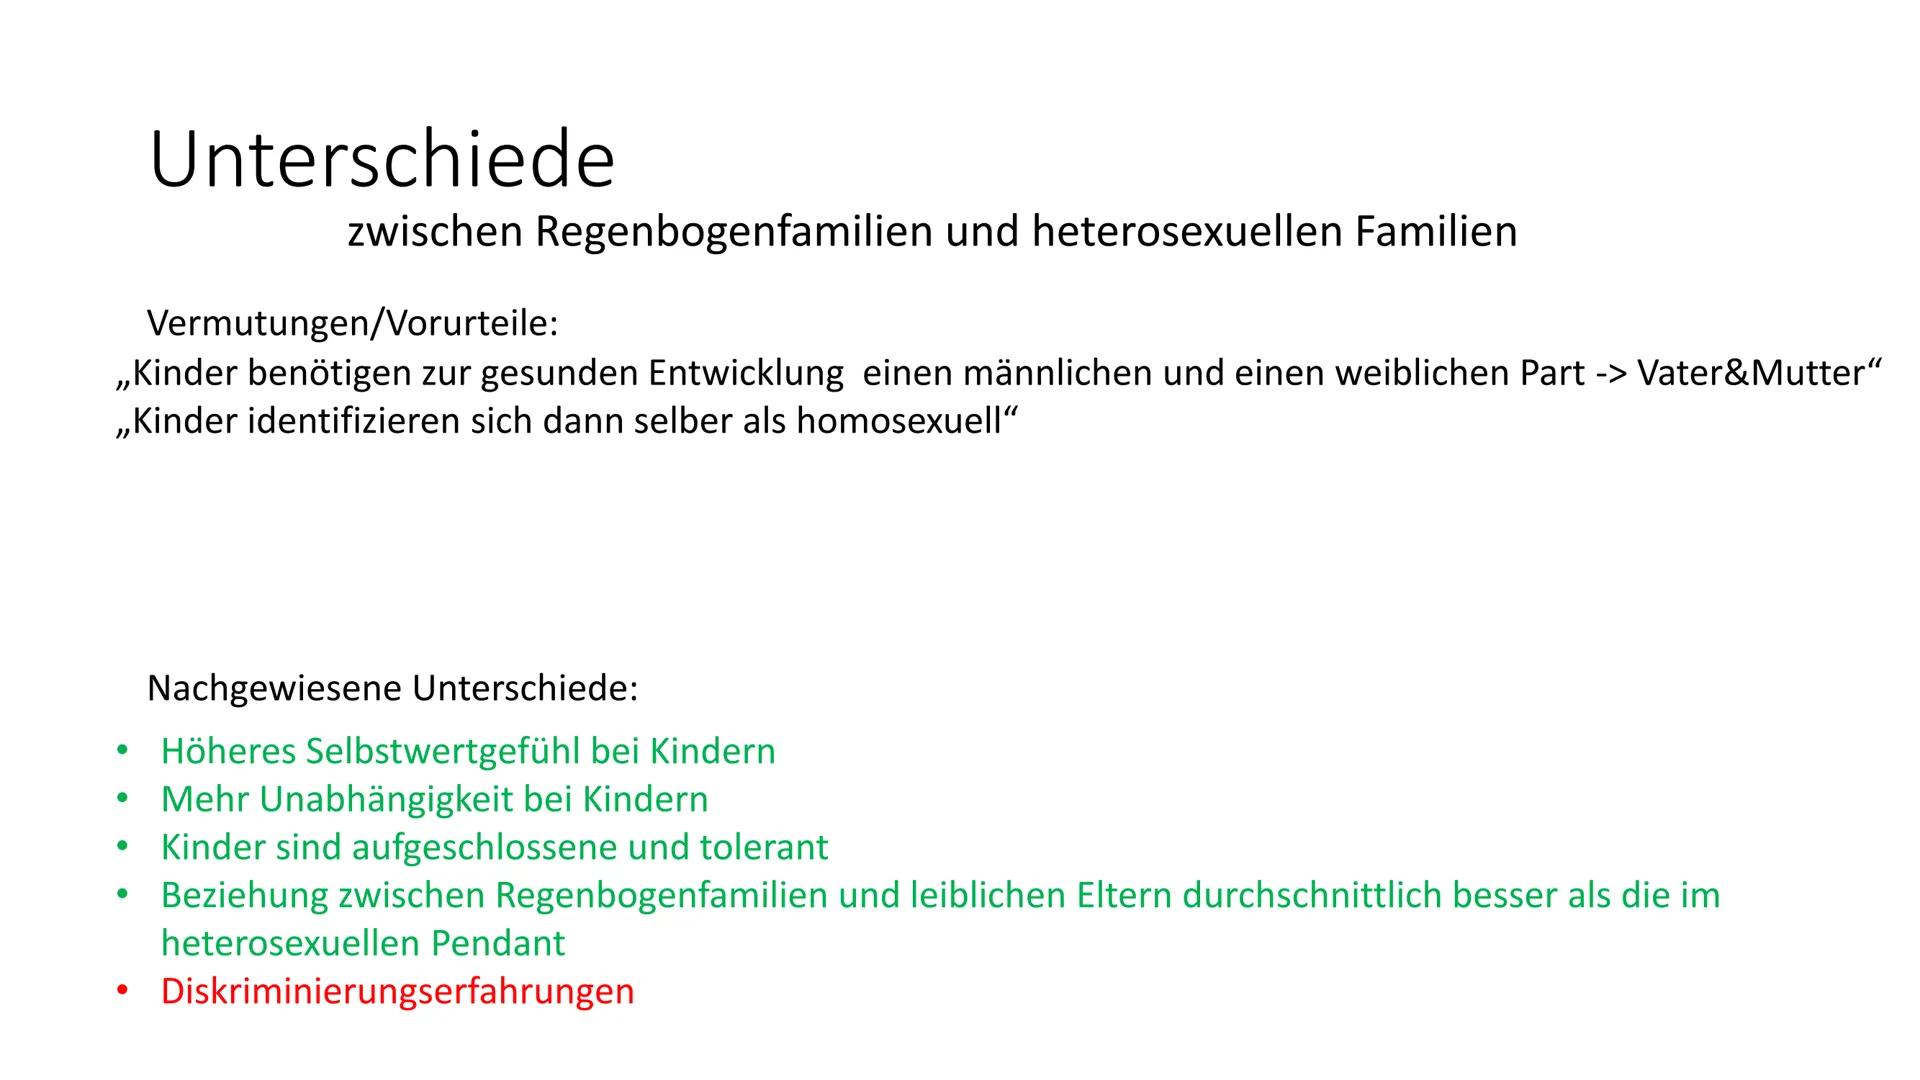 Regenbogenfamilien
von Definition:
Unter einer Regenbogenfamilie versteht man eine Familie, die aus gleichgeschlechtlichen Eltern und einem
